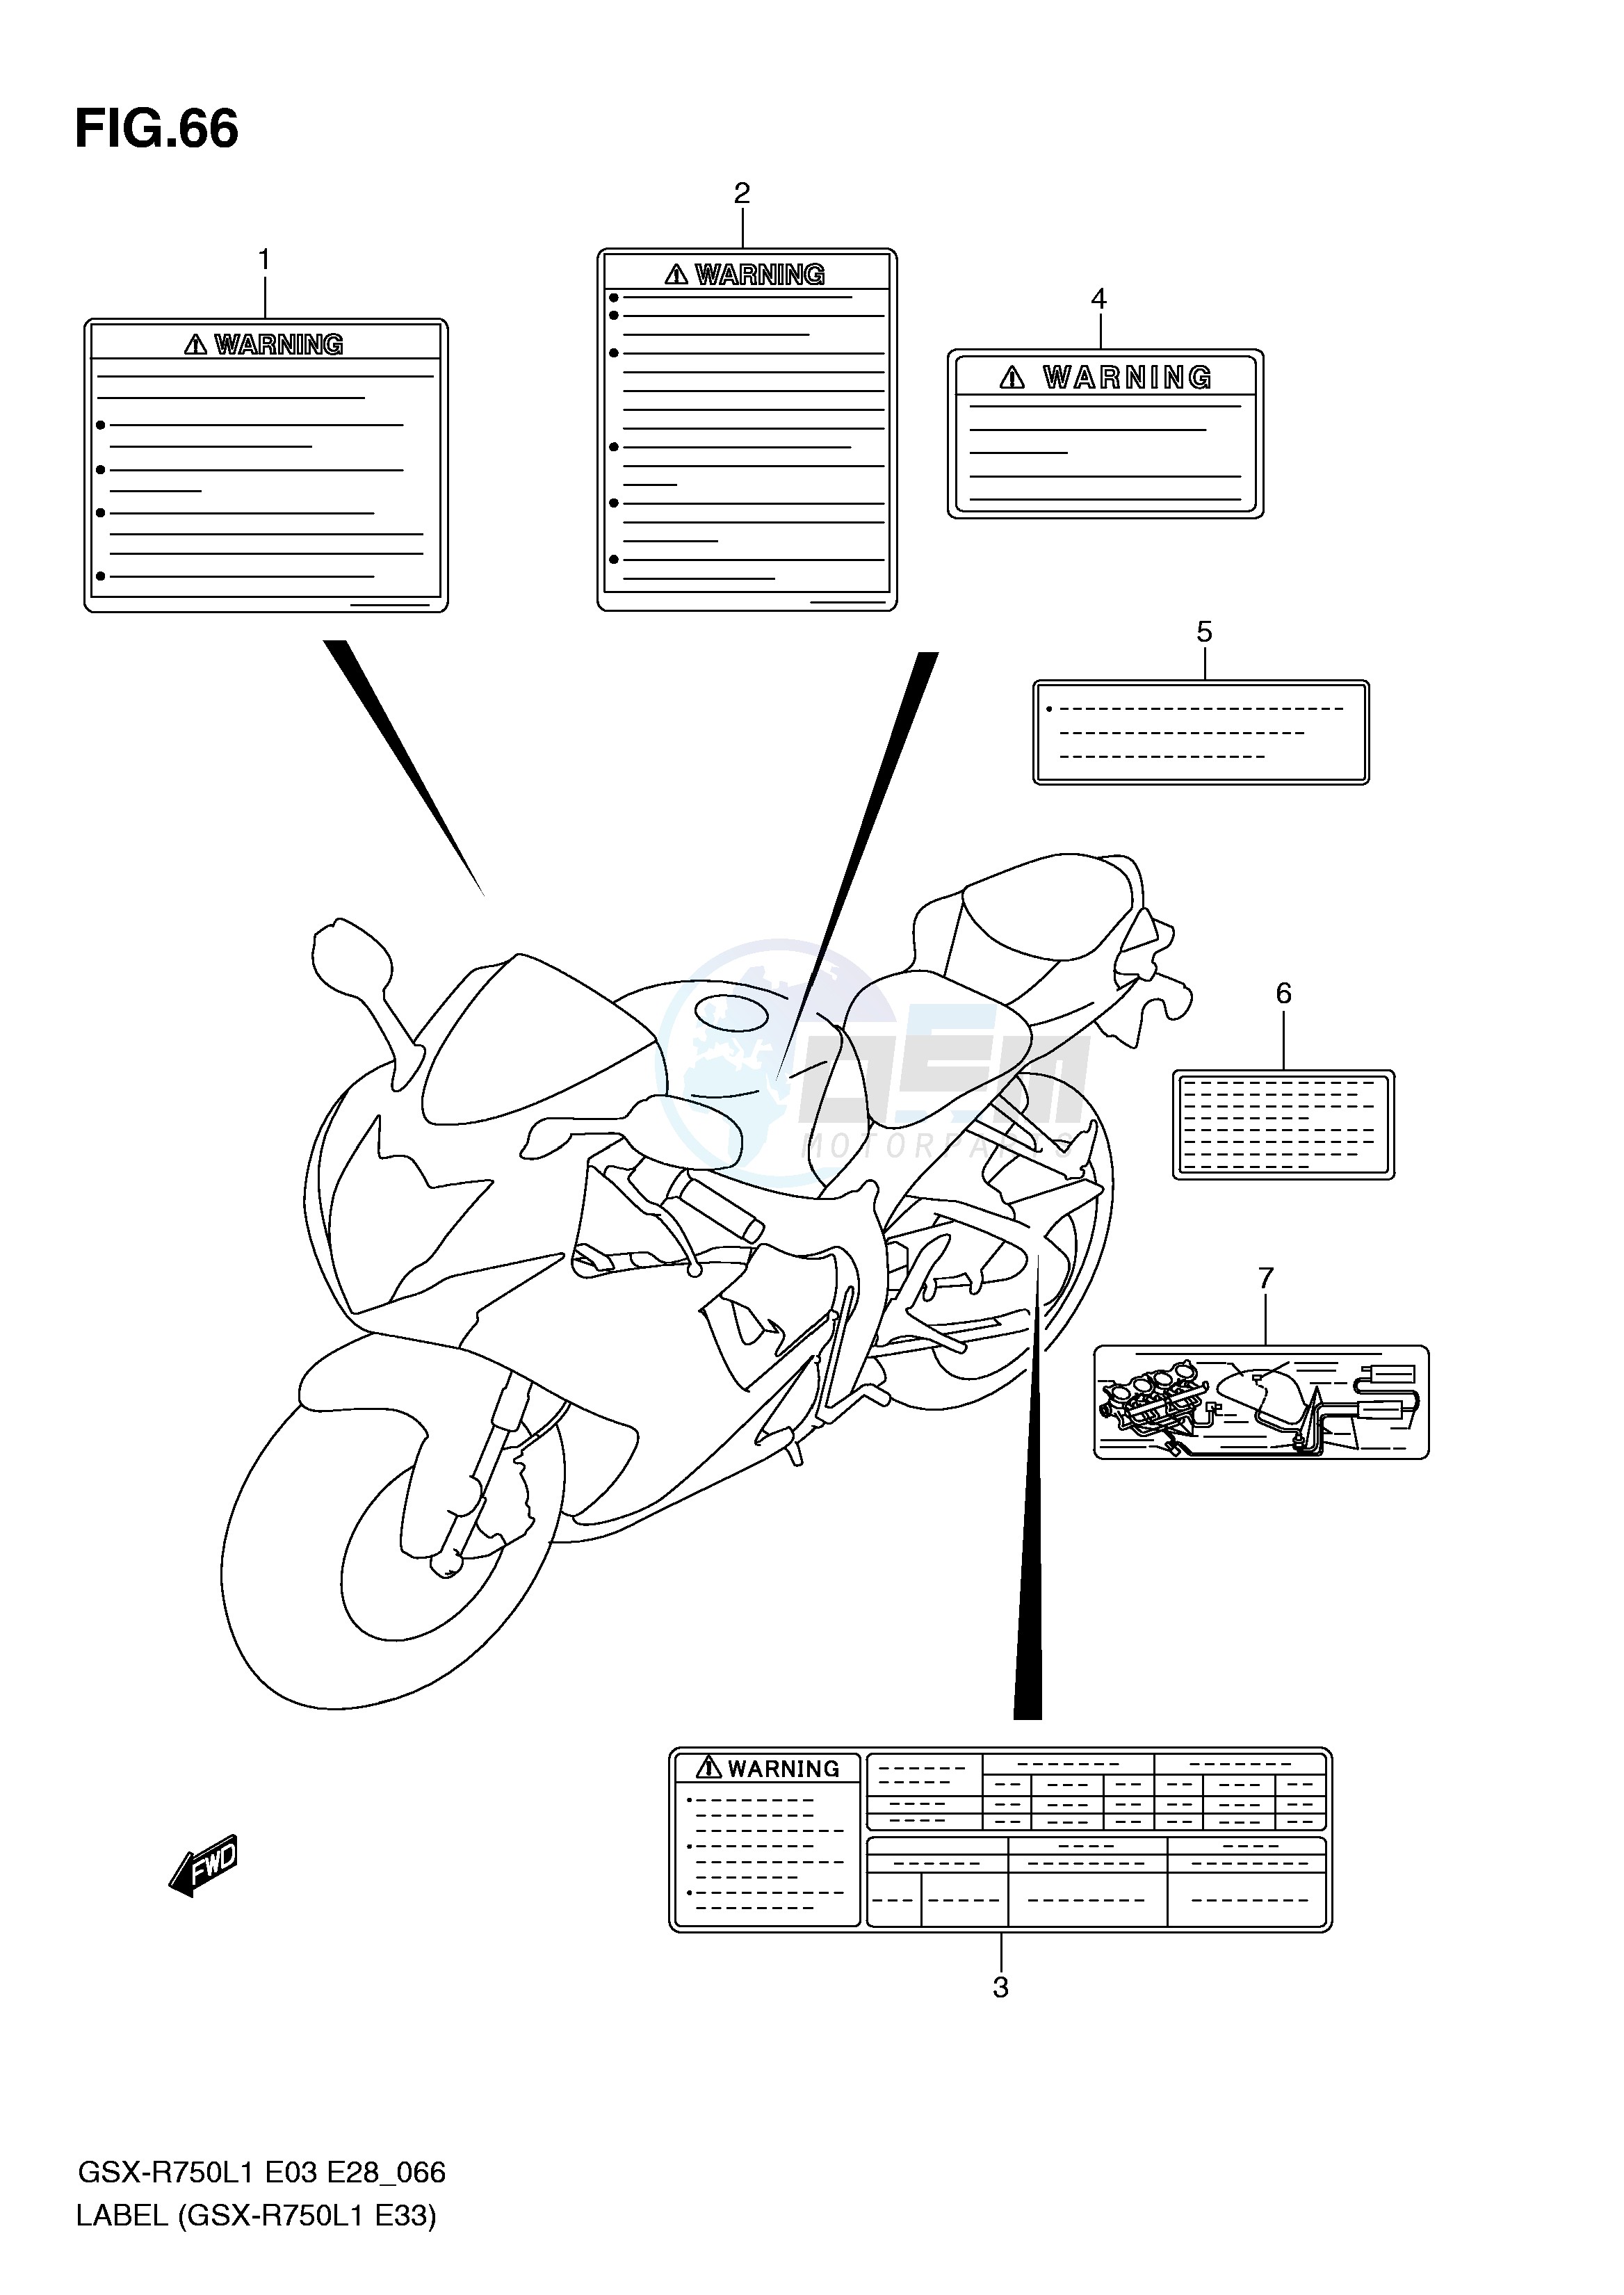 LABEL (GSX-R750L1 E33) blueprint